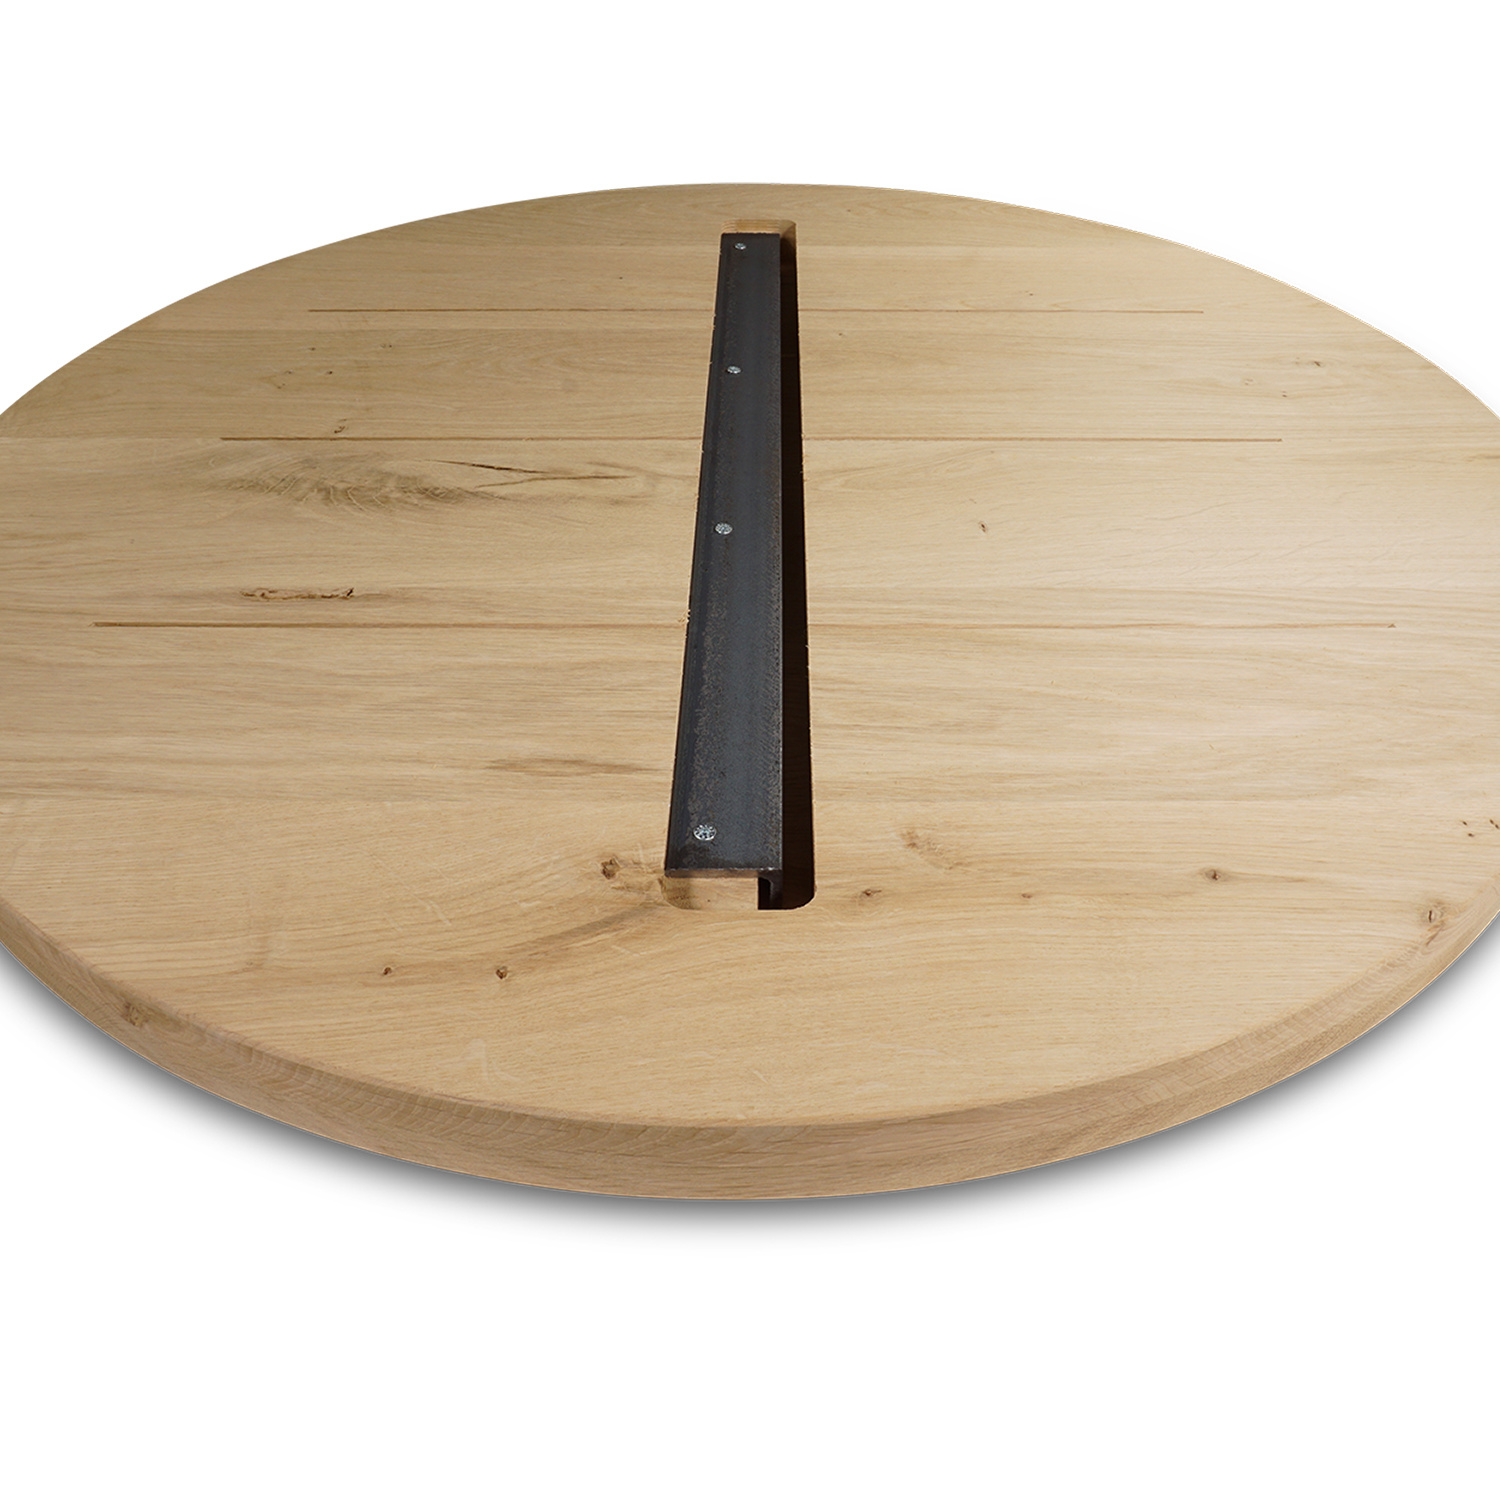  Rond eiken tafelblad op maat - 4 cm dik (2-laags) - rustiek Europees eikenhout - verlijmd kd 8-12% - diameter van 35 tot 125 cm